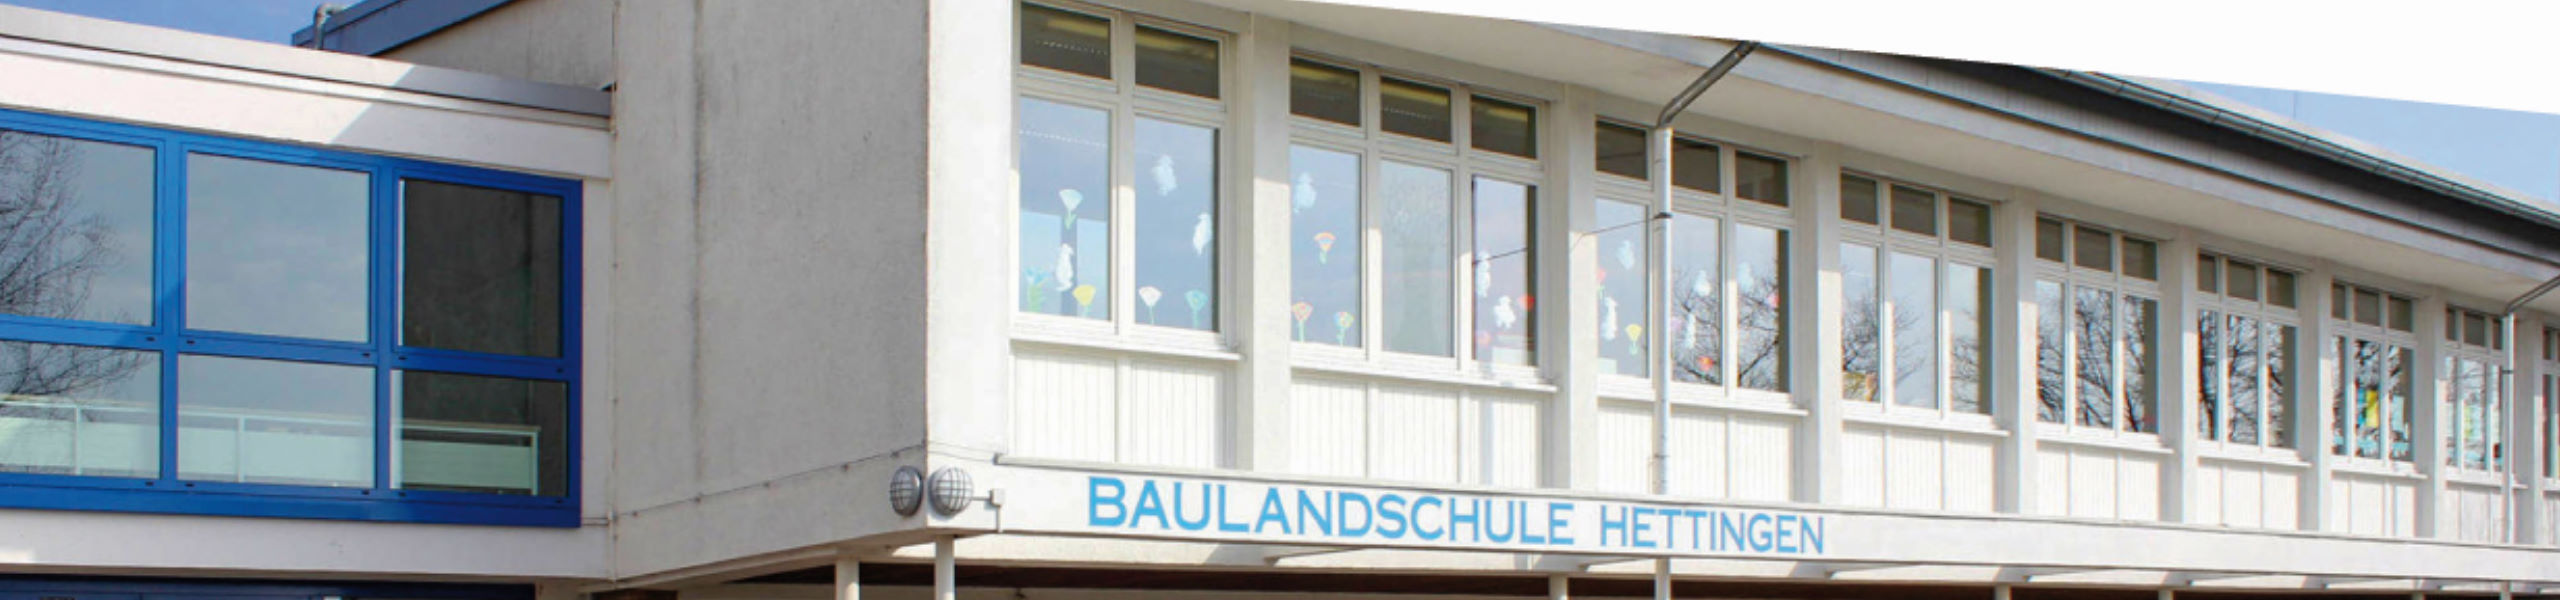 Baulandschule Hettingen - Bildungspartner